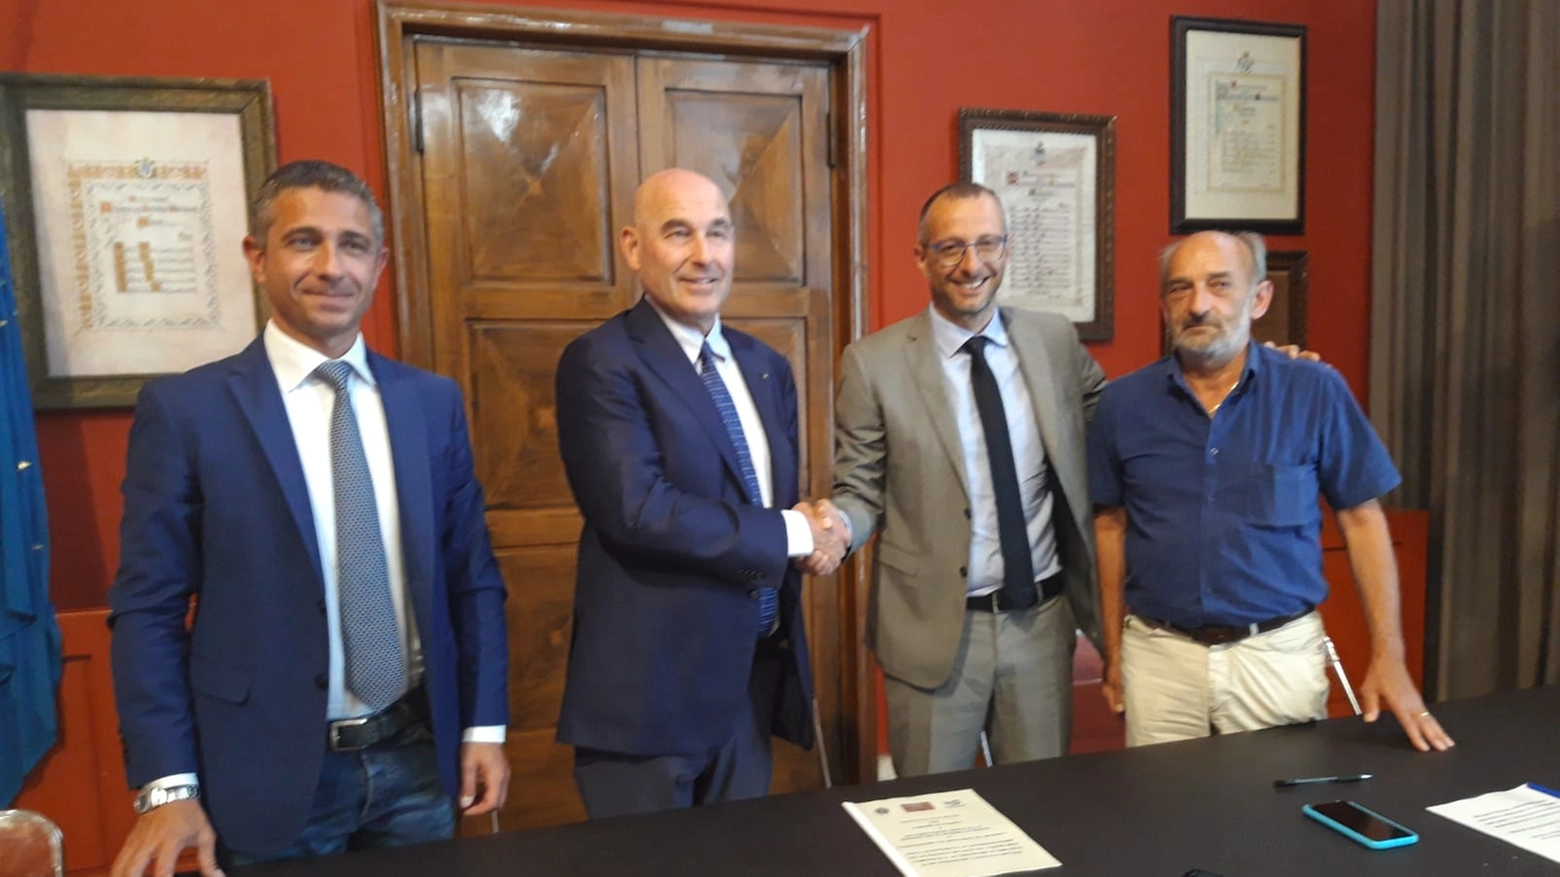 Da sinistra: Delle Noci, il presidente Fieg Riffeser Monti, il sindaco Ricci e Cecchini